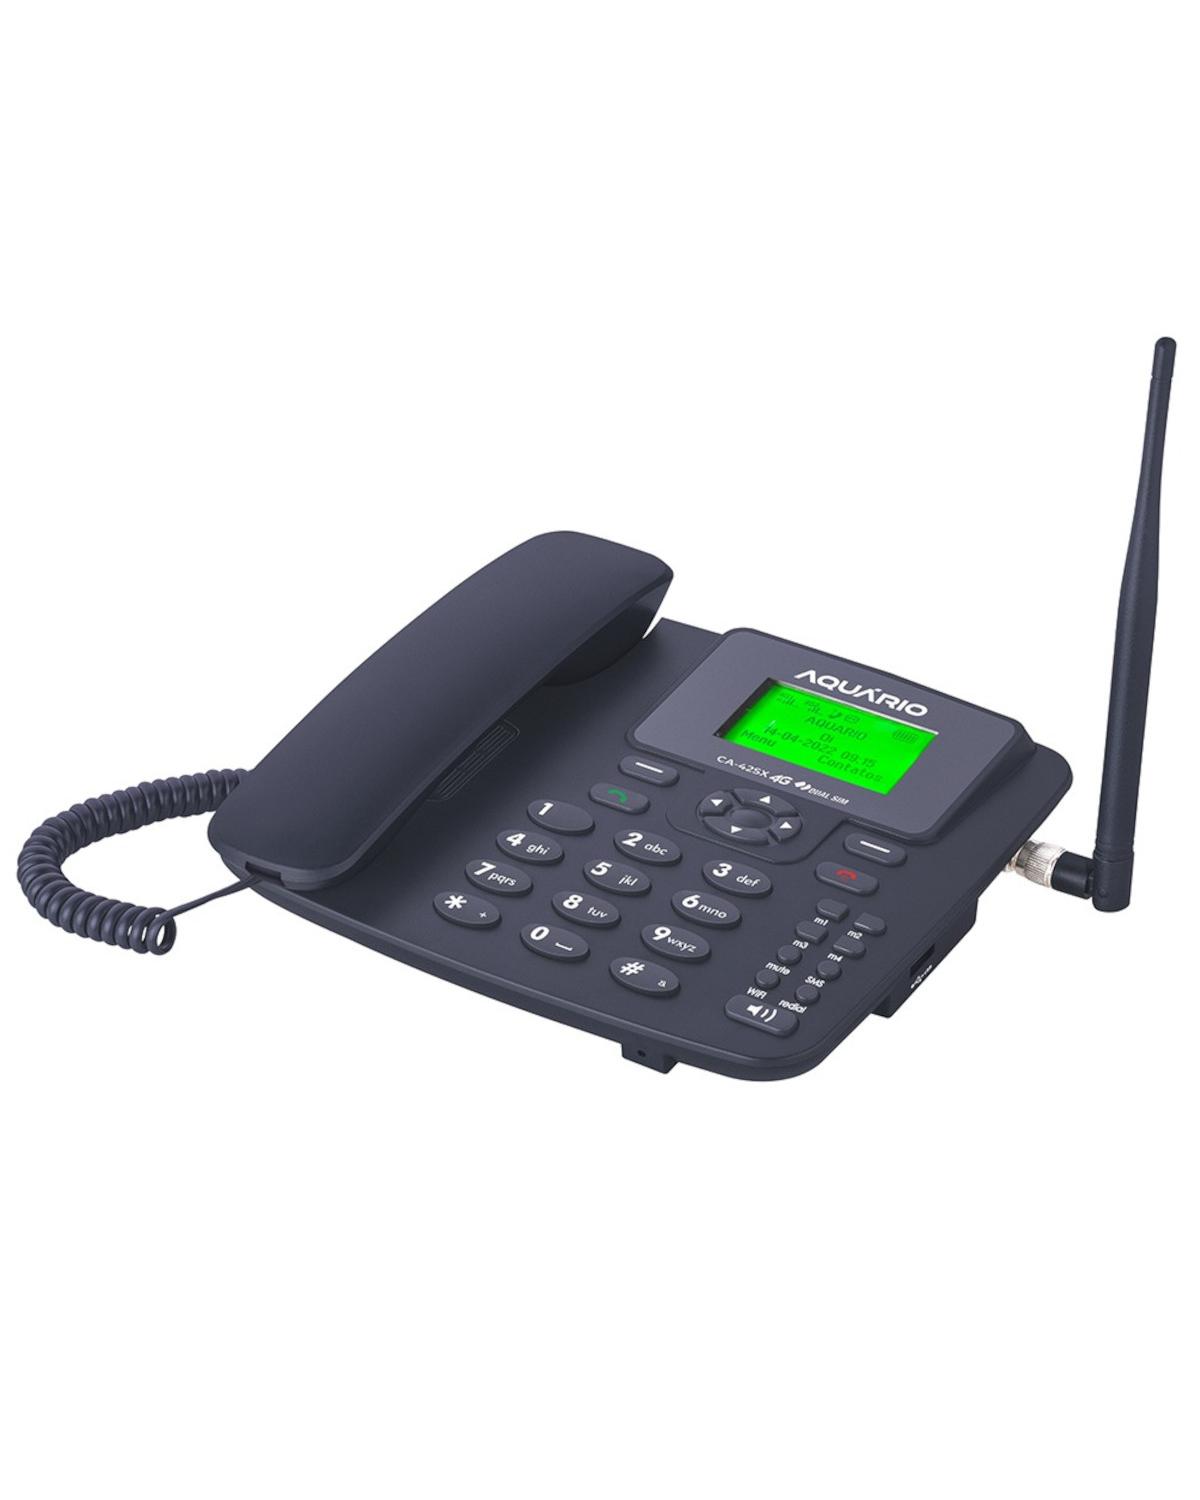 TELEFONE CELULAR FIXO DE MESA WI-FI DUAL SIM 700, 850, 900, 1800, 1900, 2100, 2600MHZ CA-42SX 4G